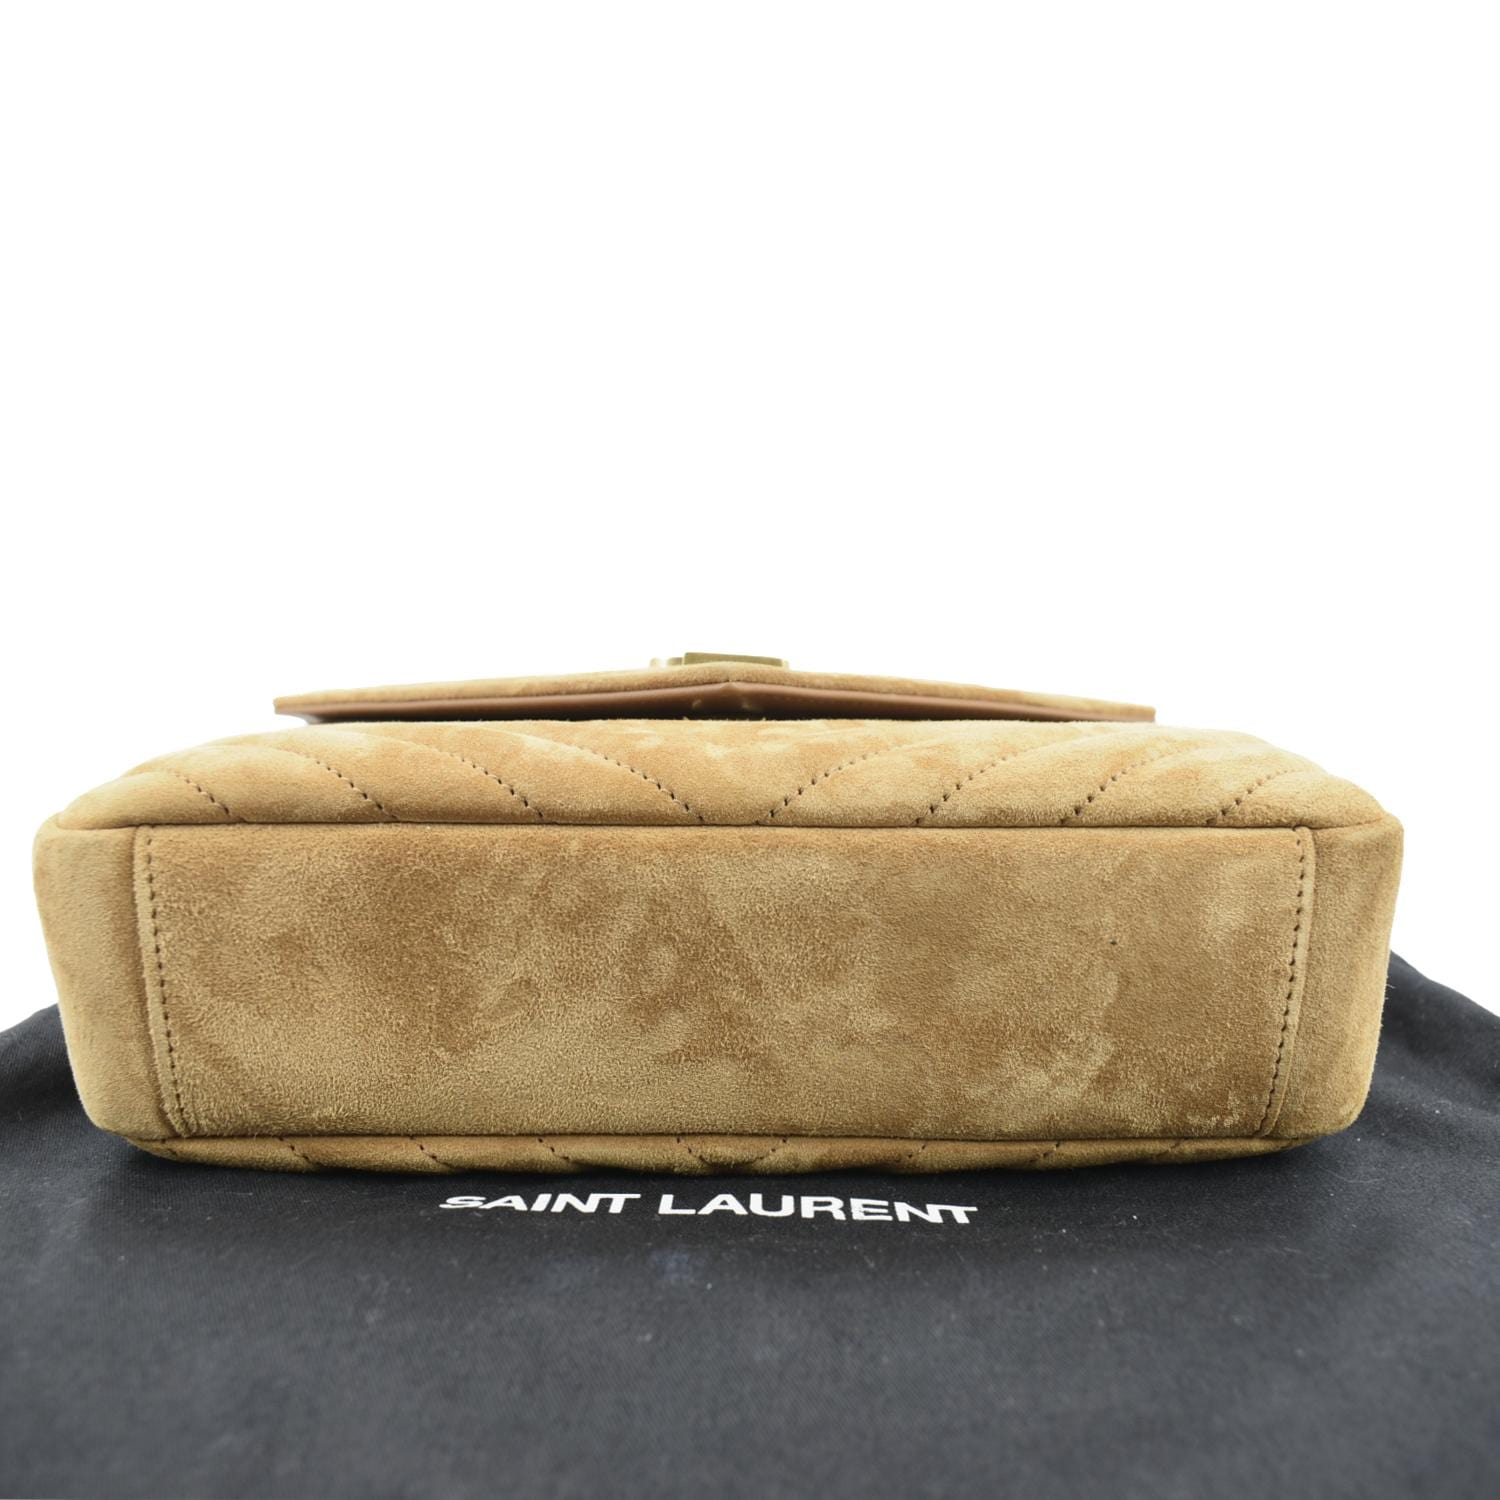 Camel Bag Hunt Part II : YSL Cabas ChYc Leather Medium East West Satchel -  Elle Blogs